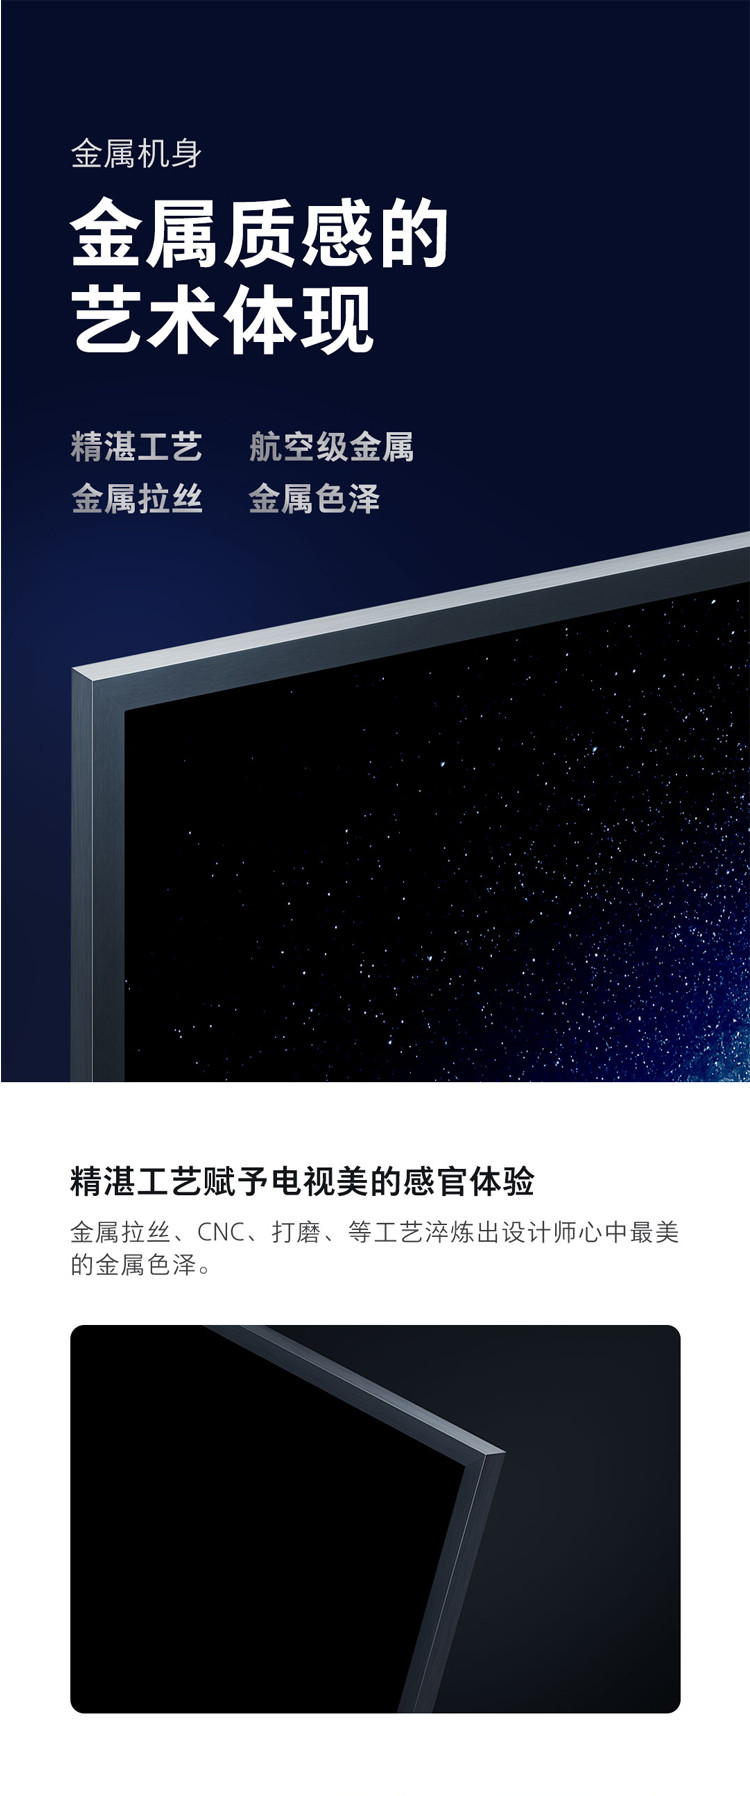 小米/MIUI 小米电视4S 65英寸 人工智能语音网络平板电视 2GB+8GB HDR 4K超高清